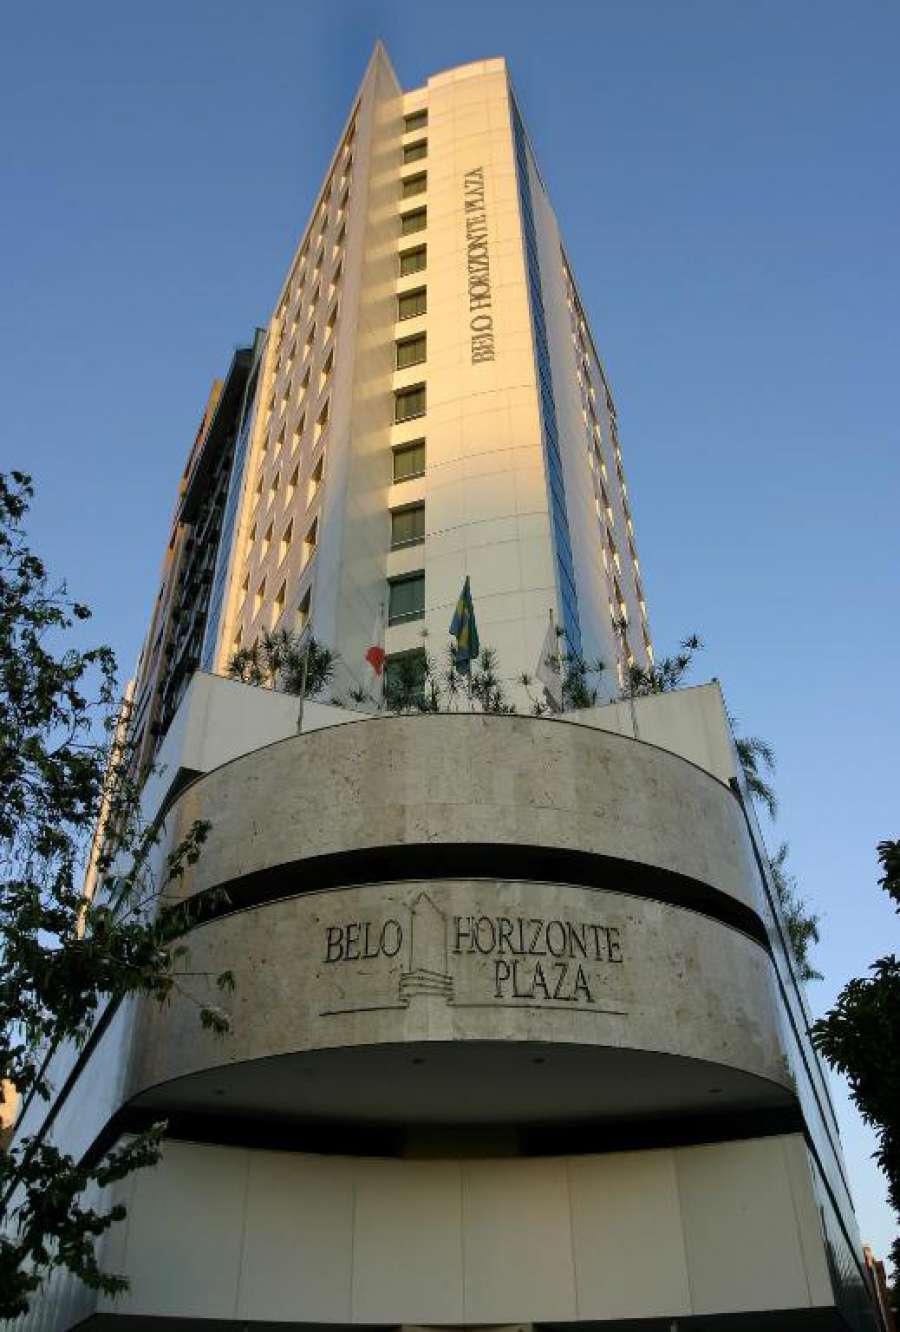 Foto do Belo Horizonte Plaza